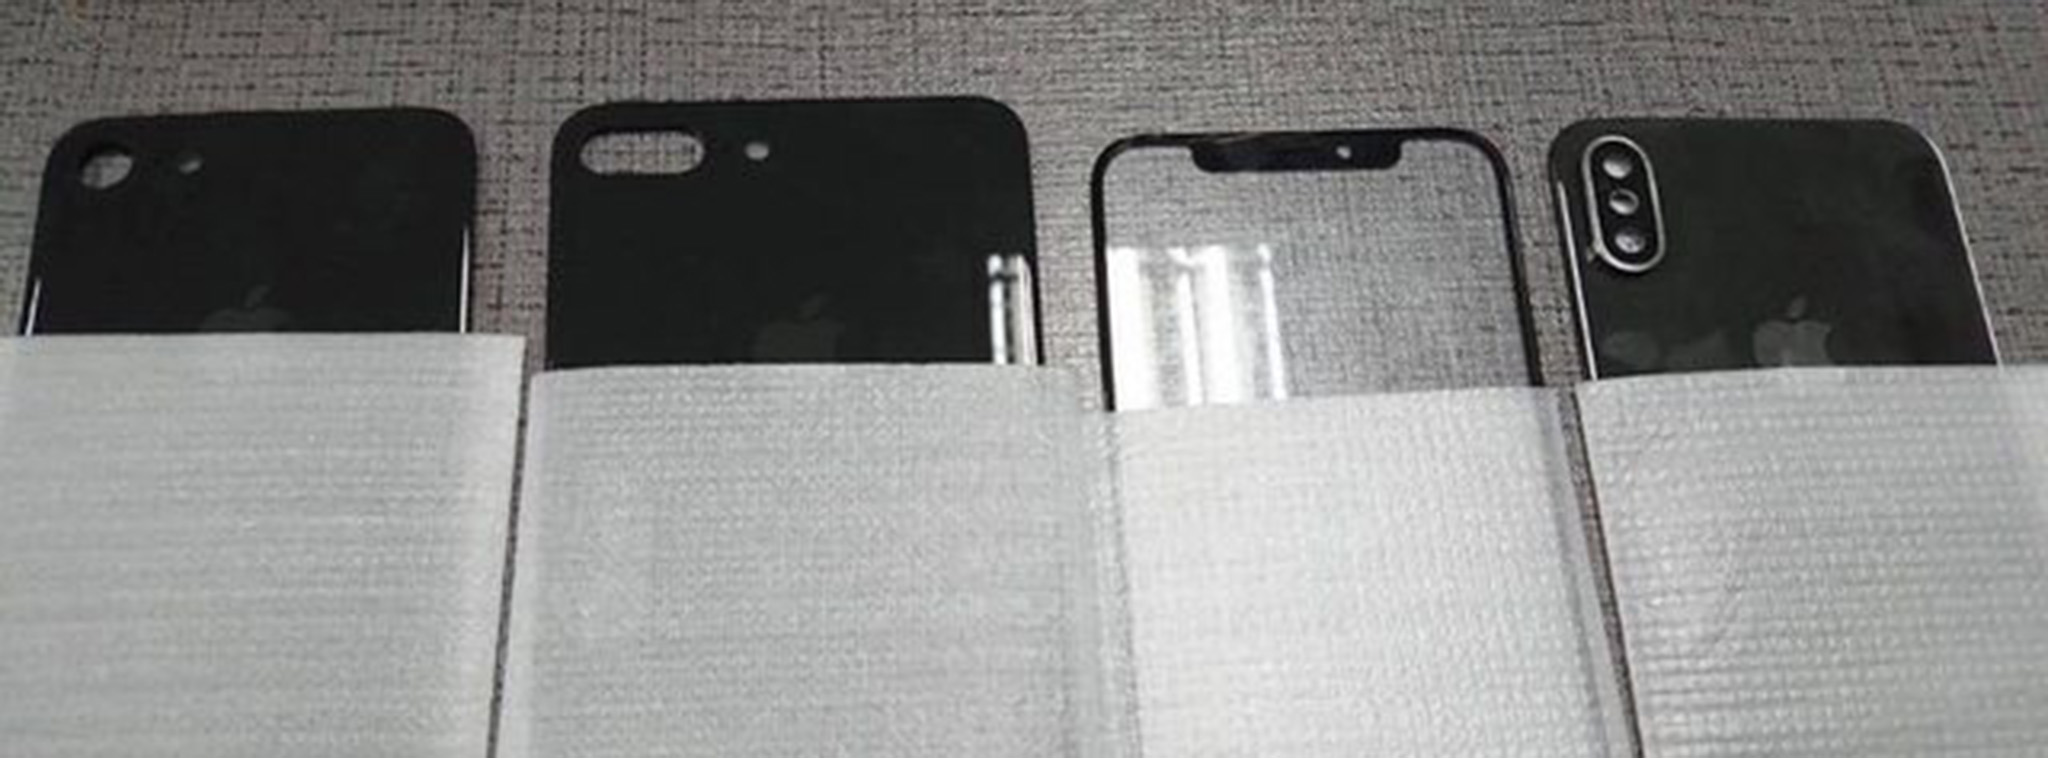 Tiếp tục rò rỉ panel trước và sau của iPhone 8, iPhone 7s